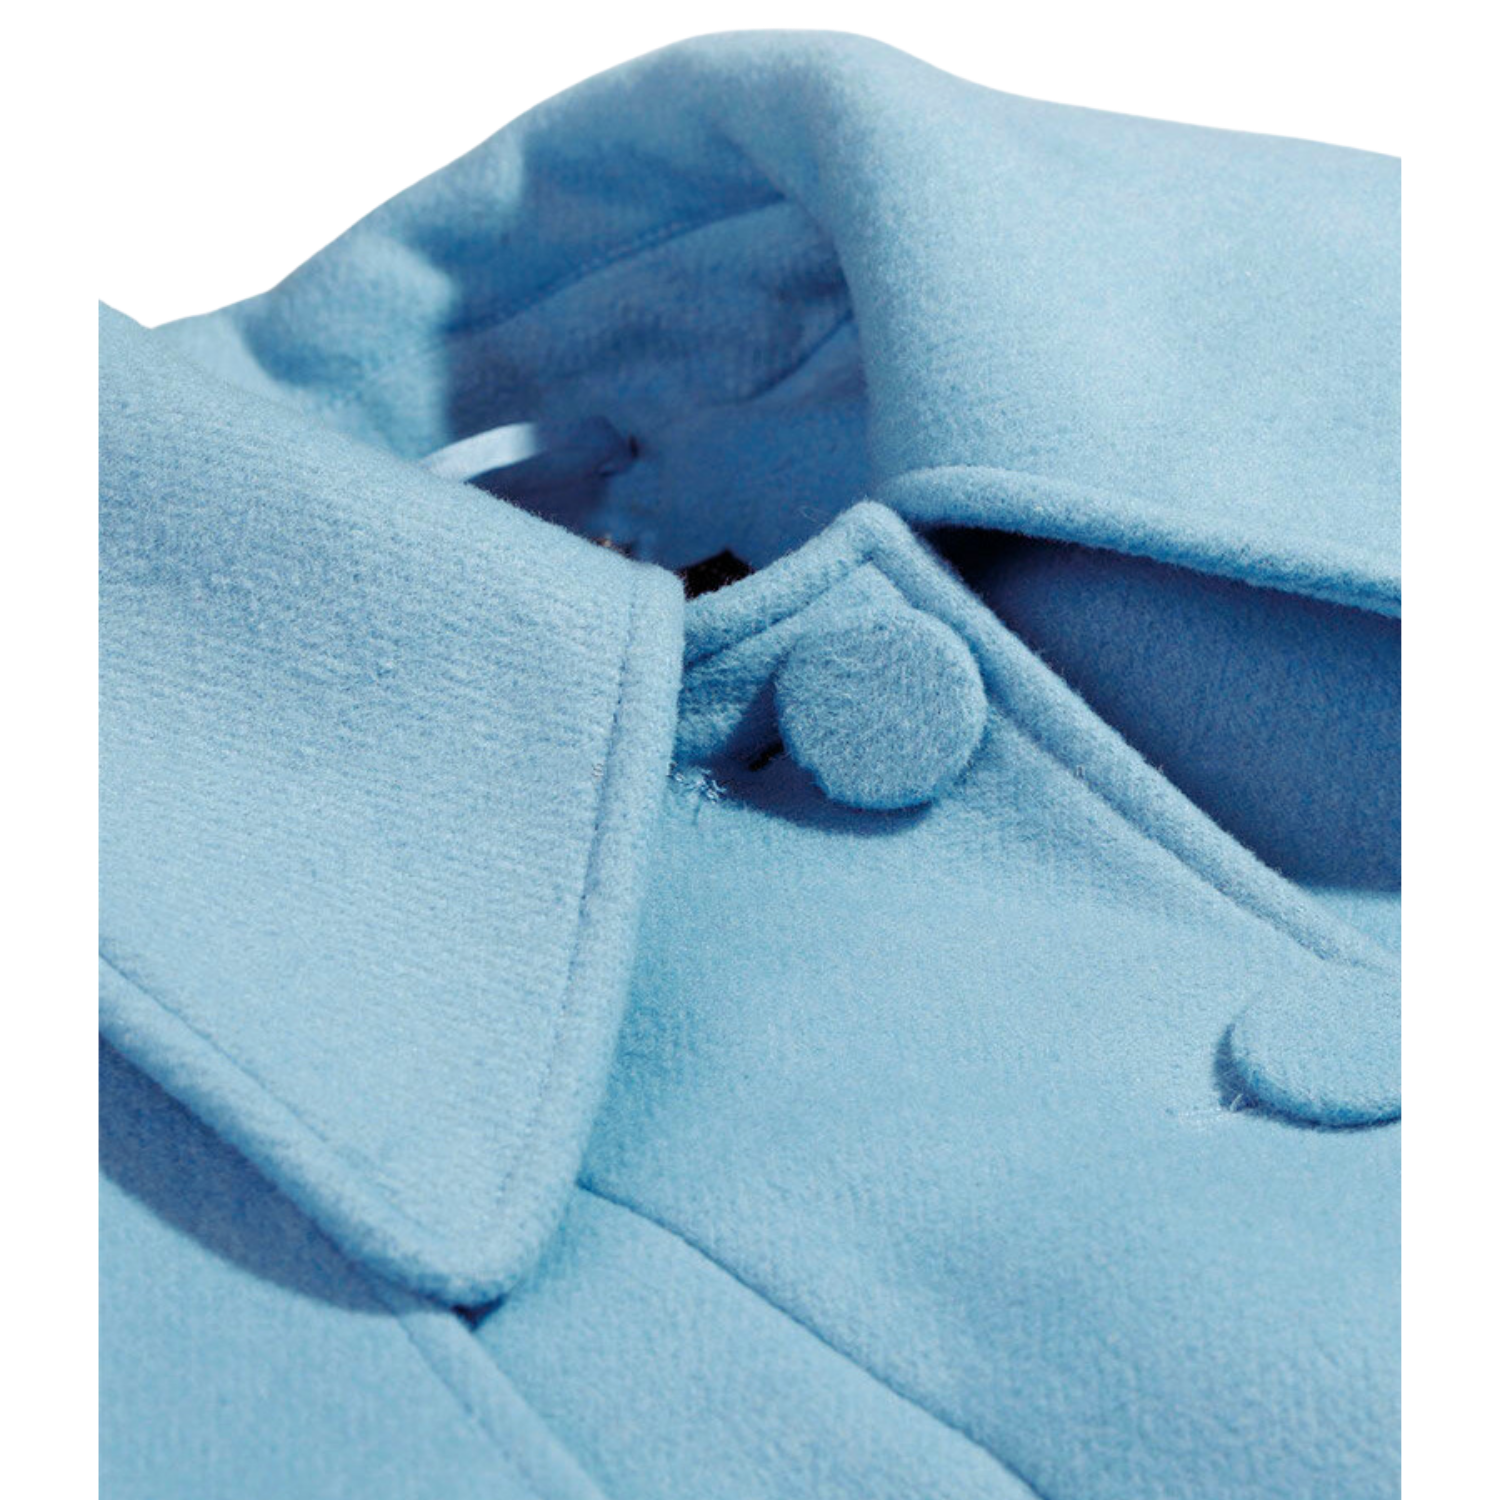 معطف من الصوف باللون الأزرق الفاتح متوسط ​​الطول مع حزام للرأس قابل للإزالة وياقة عالية